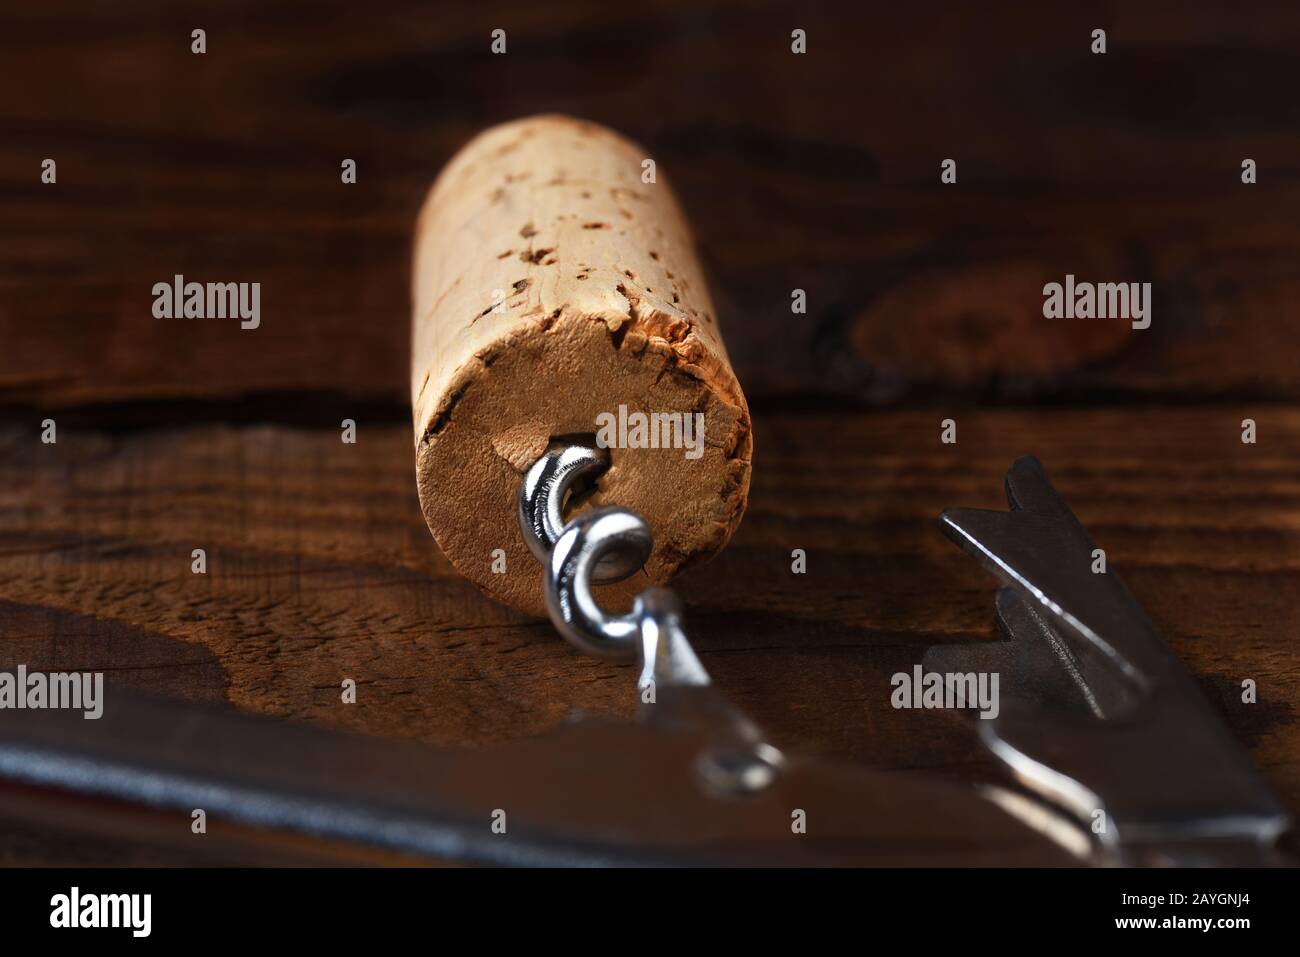 Tappatura di un tappo di vino e cavatappi su un tavolo di legno scuro. Profondità di campo poco profonda con fuoco sull'estremità del sughero. Foto Stock